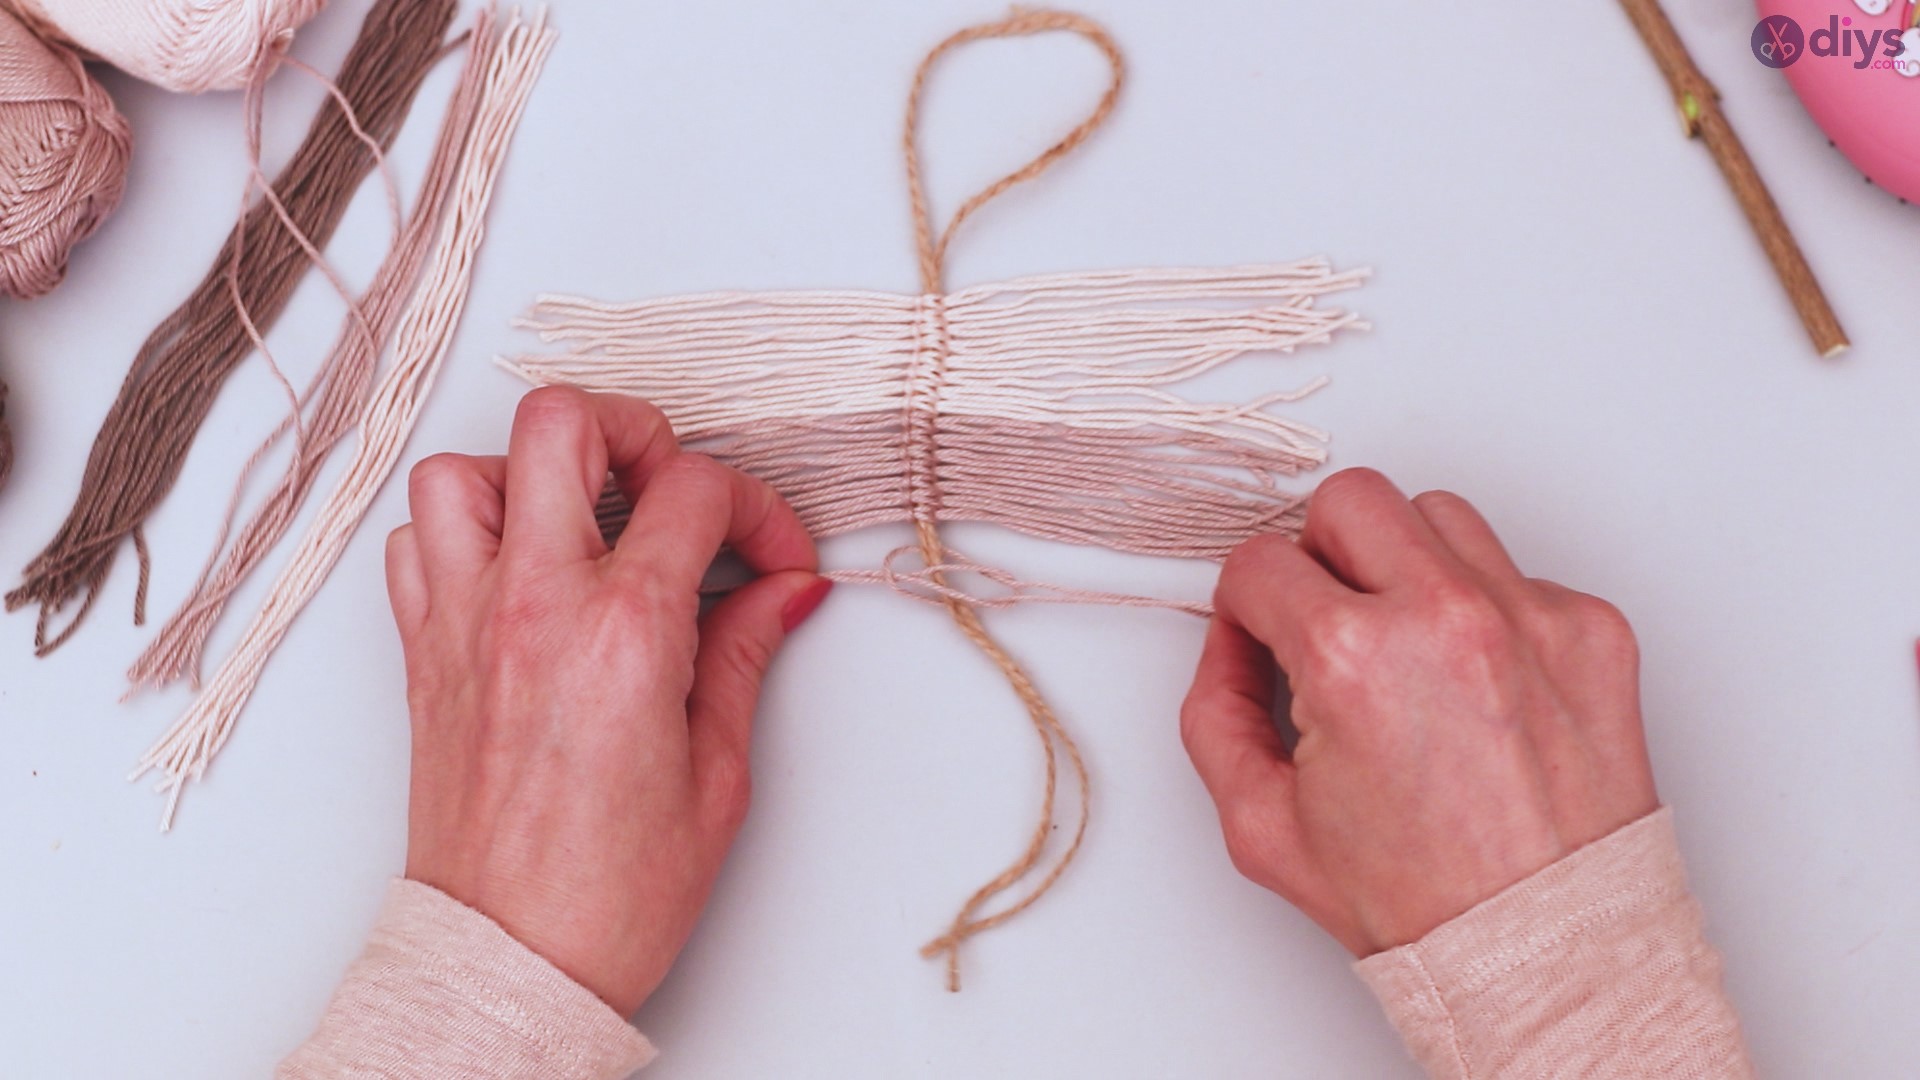 Diy yarn leaf wall decor tutorial (21)